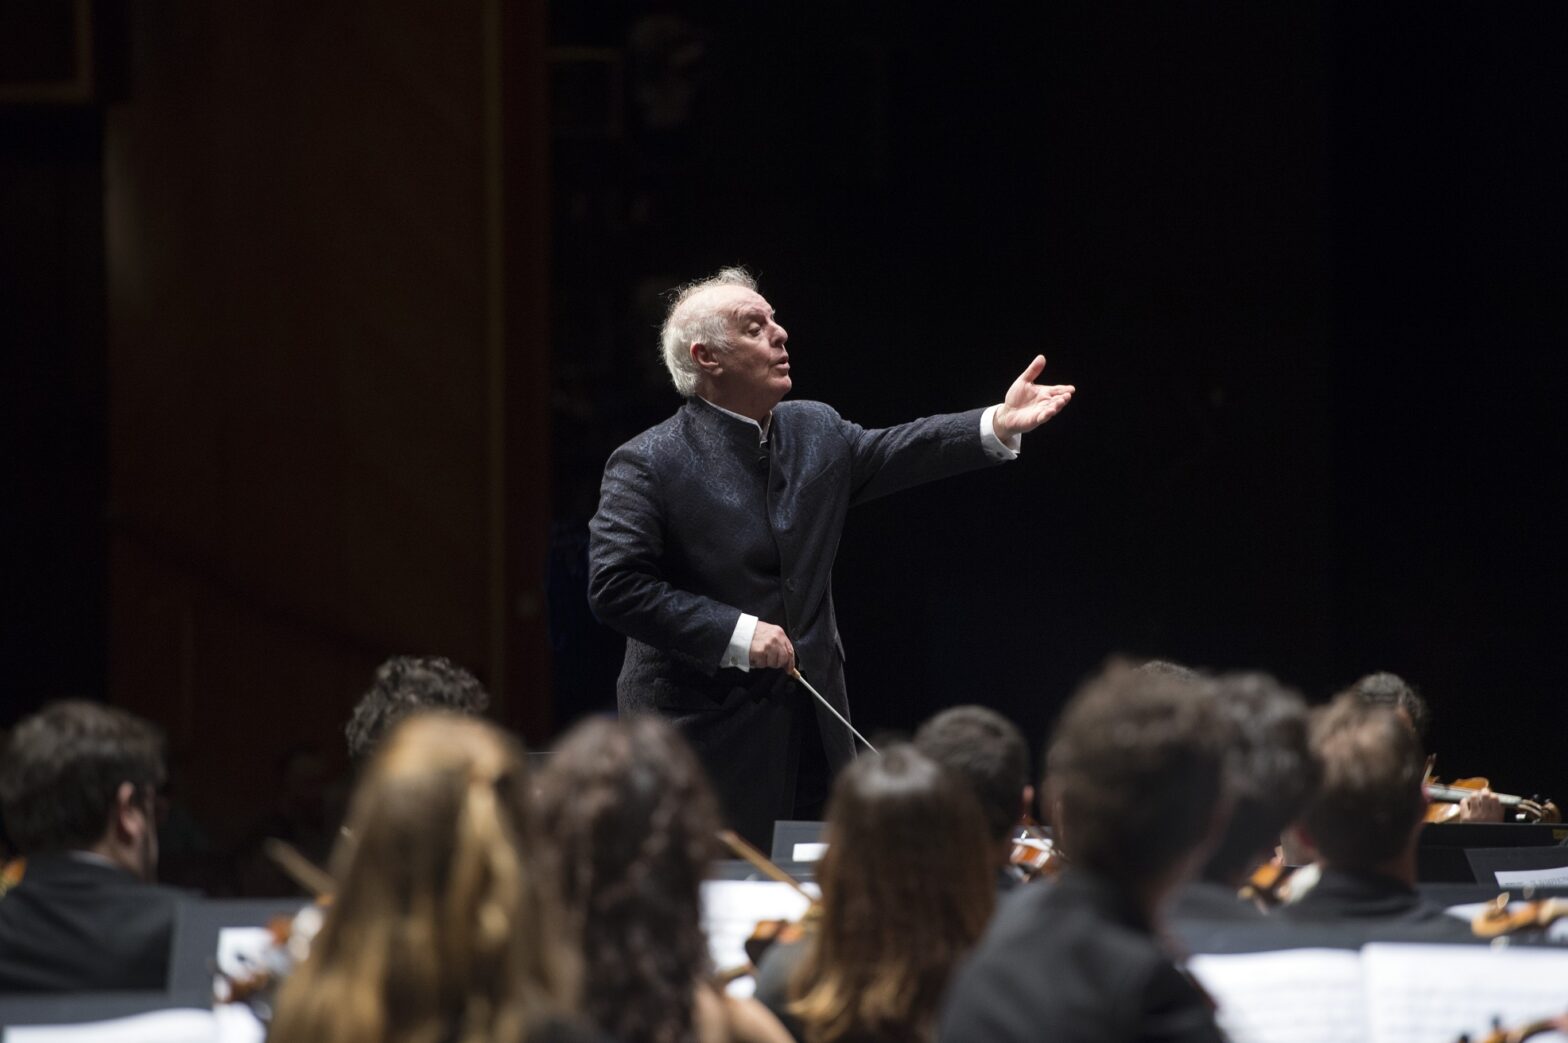 Der israelisch-argentinische Dirigent Daniel Barenboim eröffnet das Festival "Prager Frühling". Foto: Monika Rittershaus